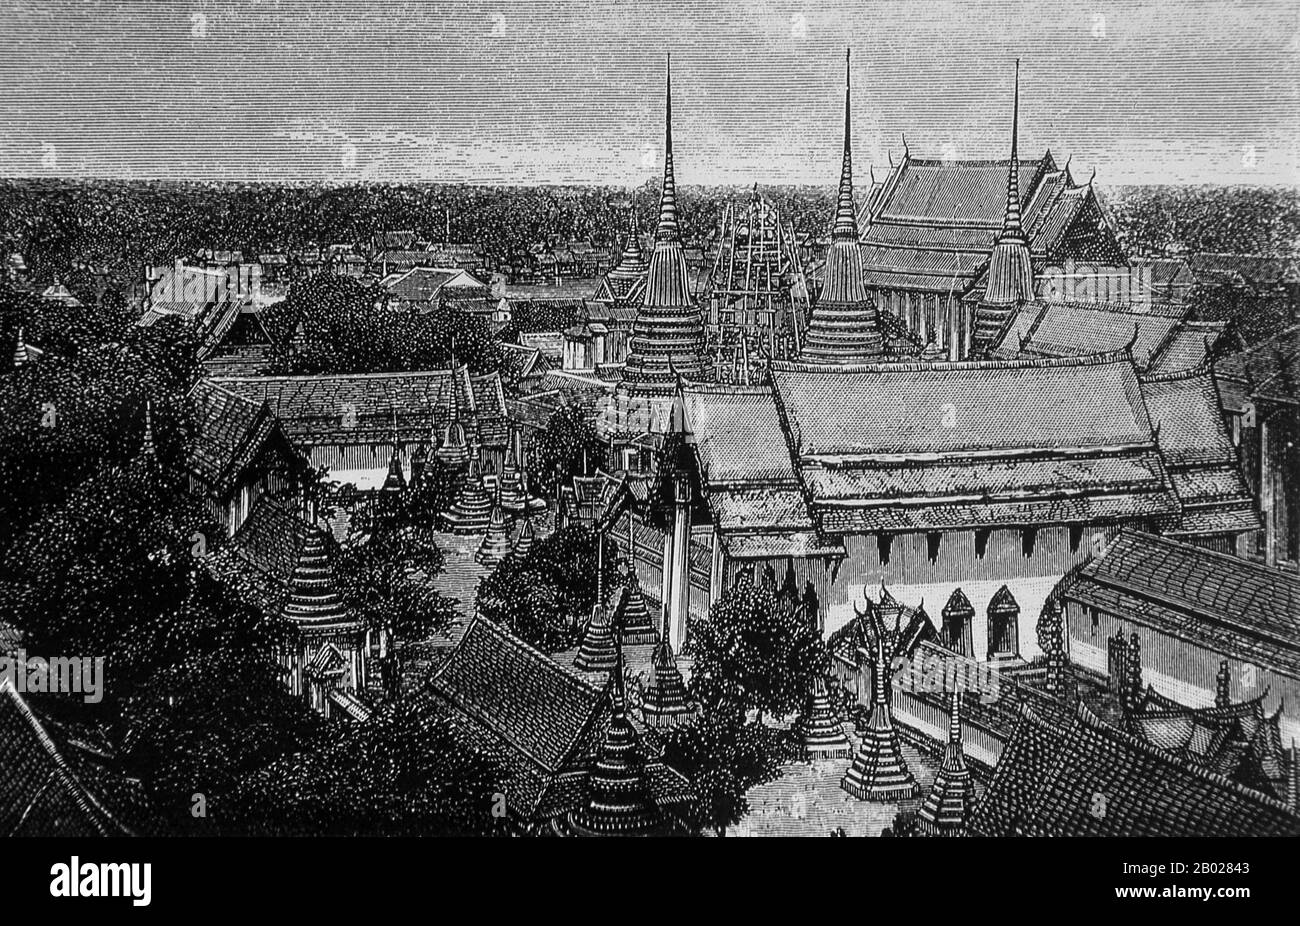 Der Wat Pho (offizieller Name Wat Phra Chettuphon Wimon Mangkhlaram Ratchaworamahawihan) wurde ursprünglich im 16. Jahrhundert erbaut und ist Bangkoks ältester Tempel. König Rama I. aus der Chakri-Dynastie (1736-1809) baute den Tempel in den 1780er Jahren um. Der offiziell Wat Phra Chetuphon genannte Tempel gehört zu den bekanntesten buddhistischen Tempeln Bangkoks und ist heute eine bedeutende Touristenattraktion, die sich direkt südlich des großen Palastes befindet. Wat Pho ist berühmt für seinen Zurückhaltenden Buddha und bekannt als das Zuhause traditioneller Thai-Massage. Stockfoto